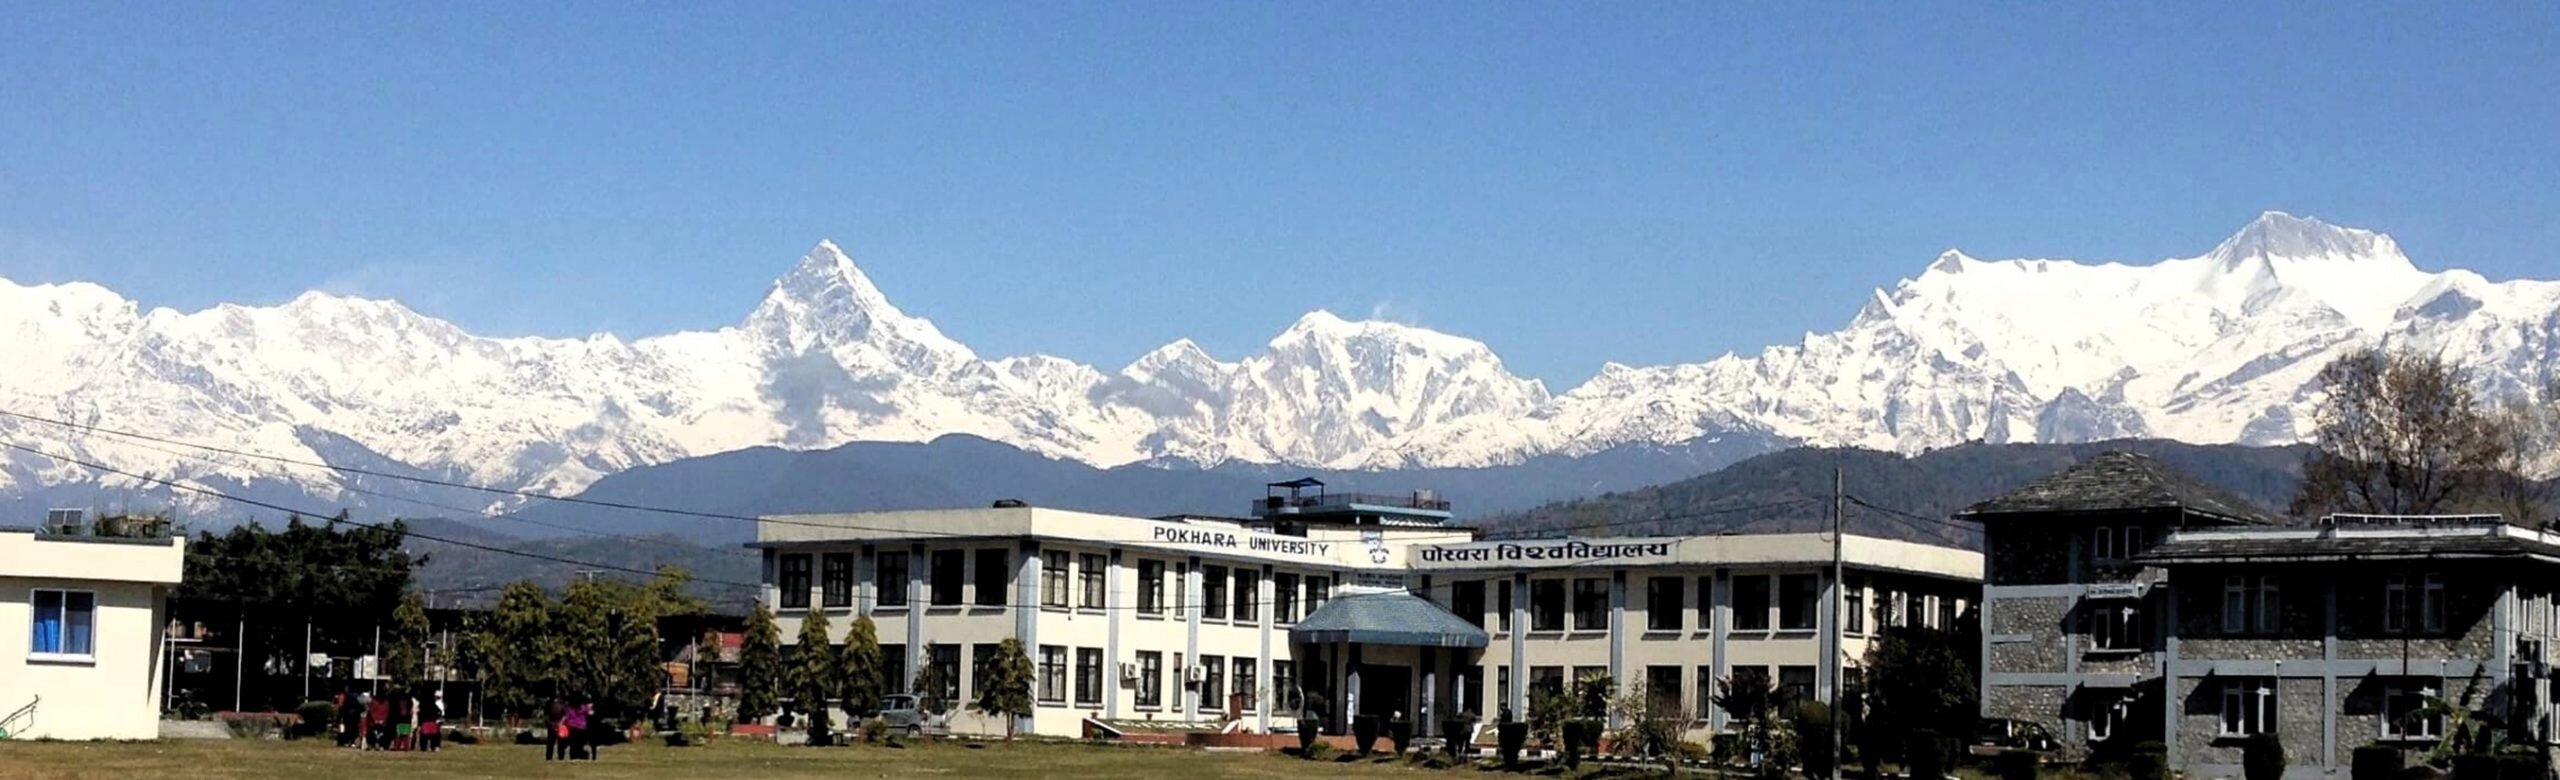 Pokhara University